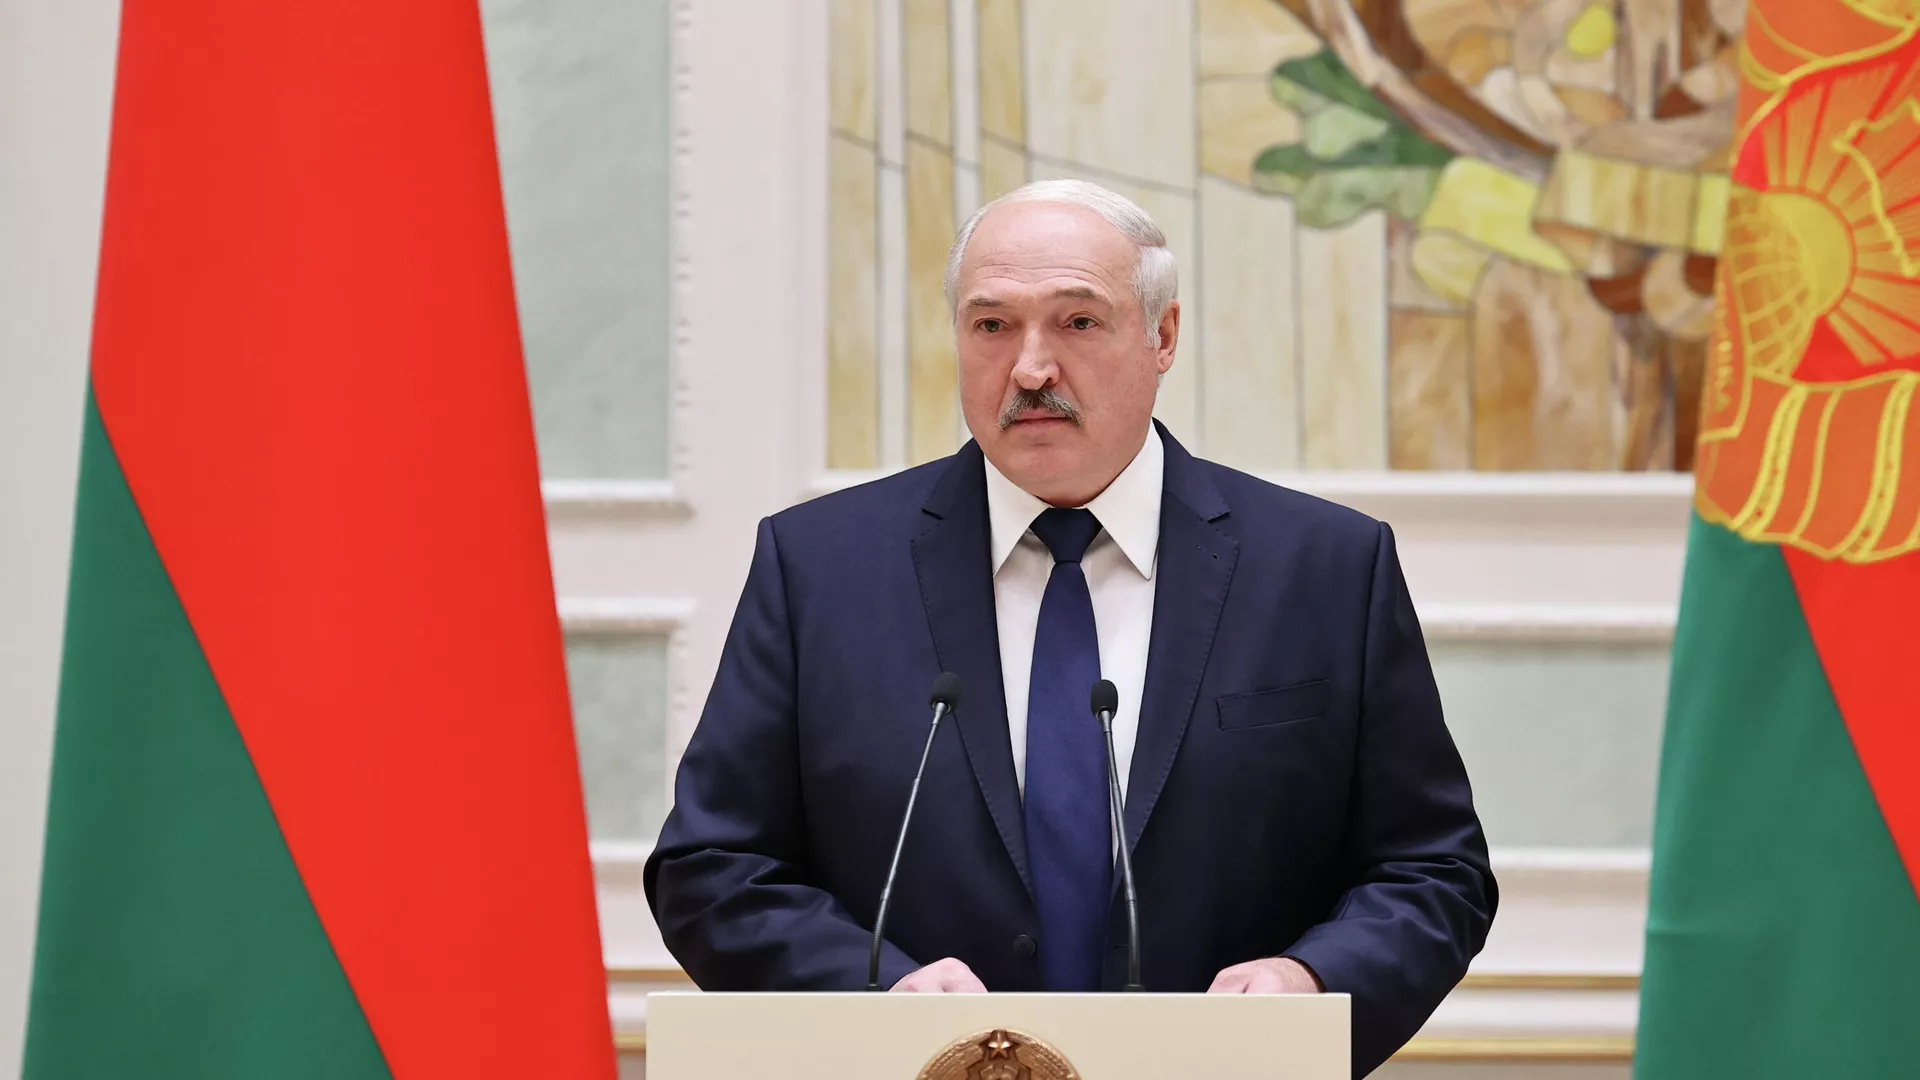 Лукашенко назвал выборы в США издевательством над демократией